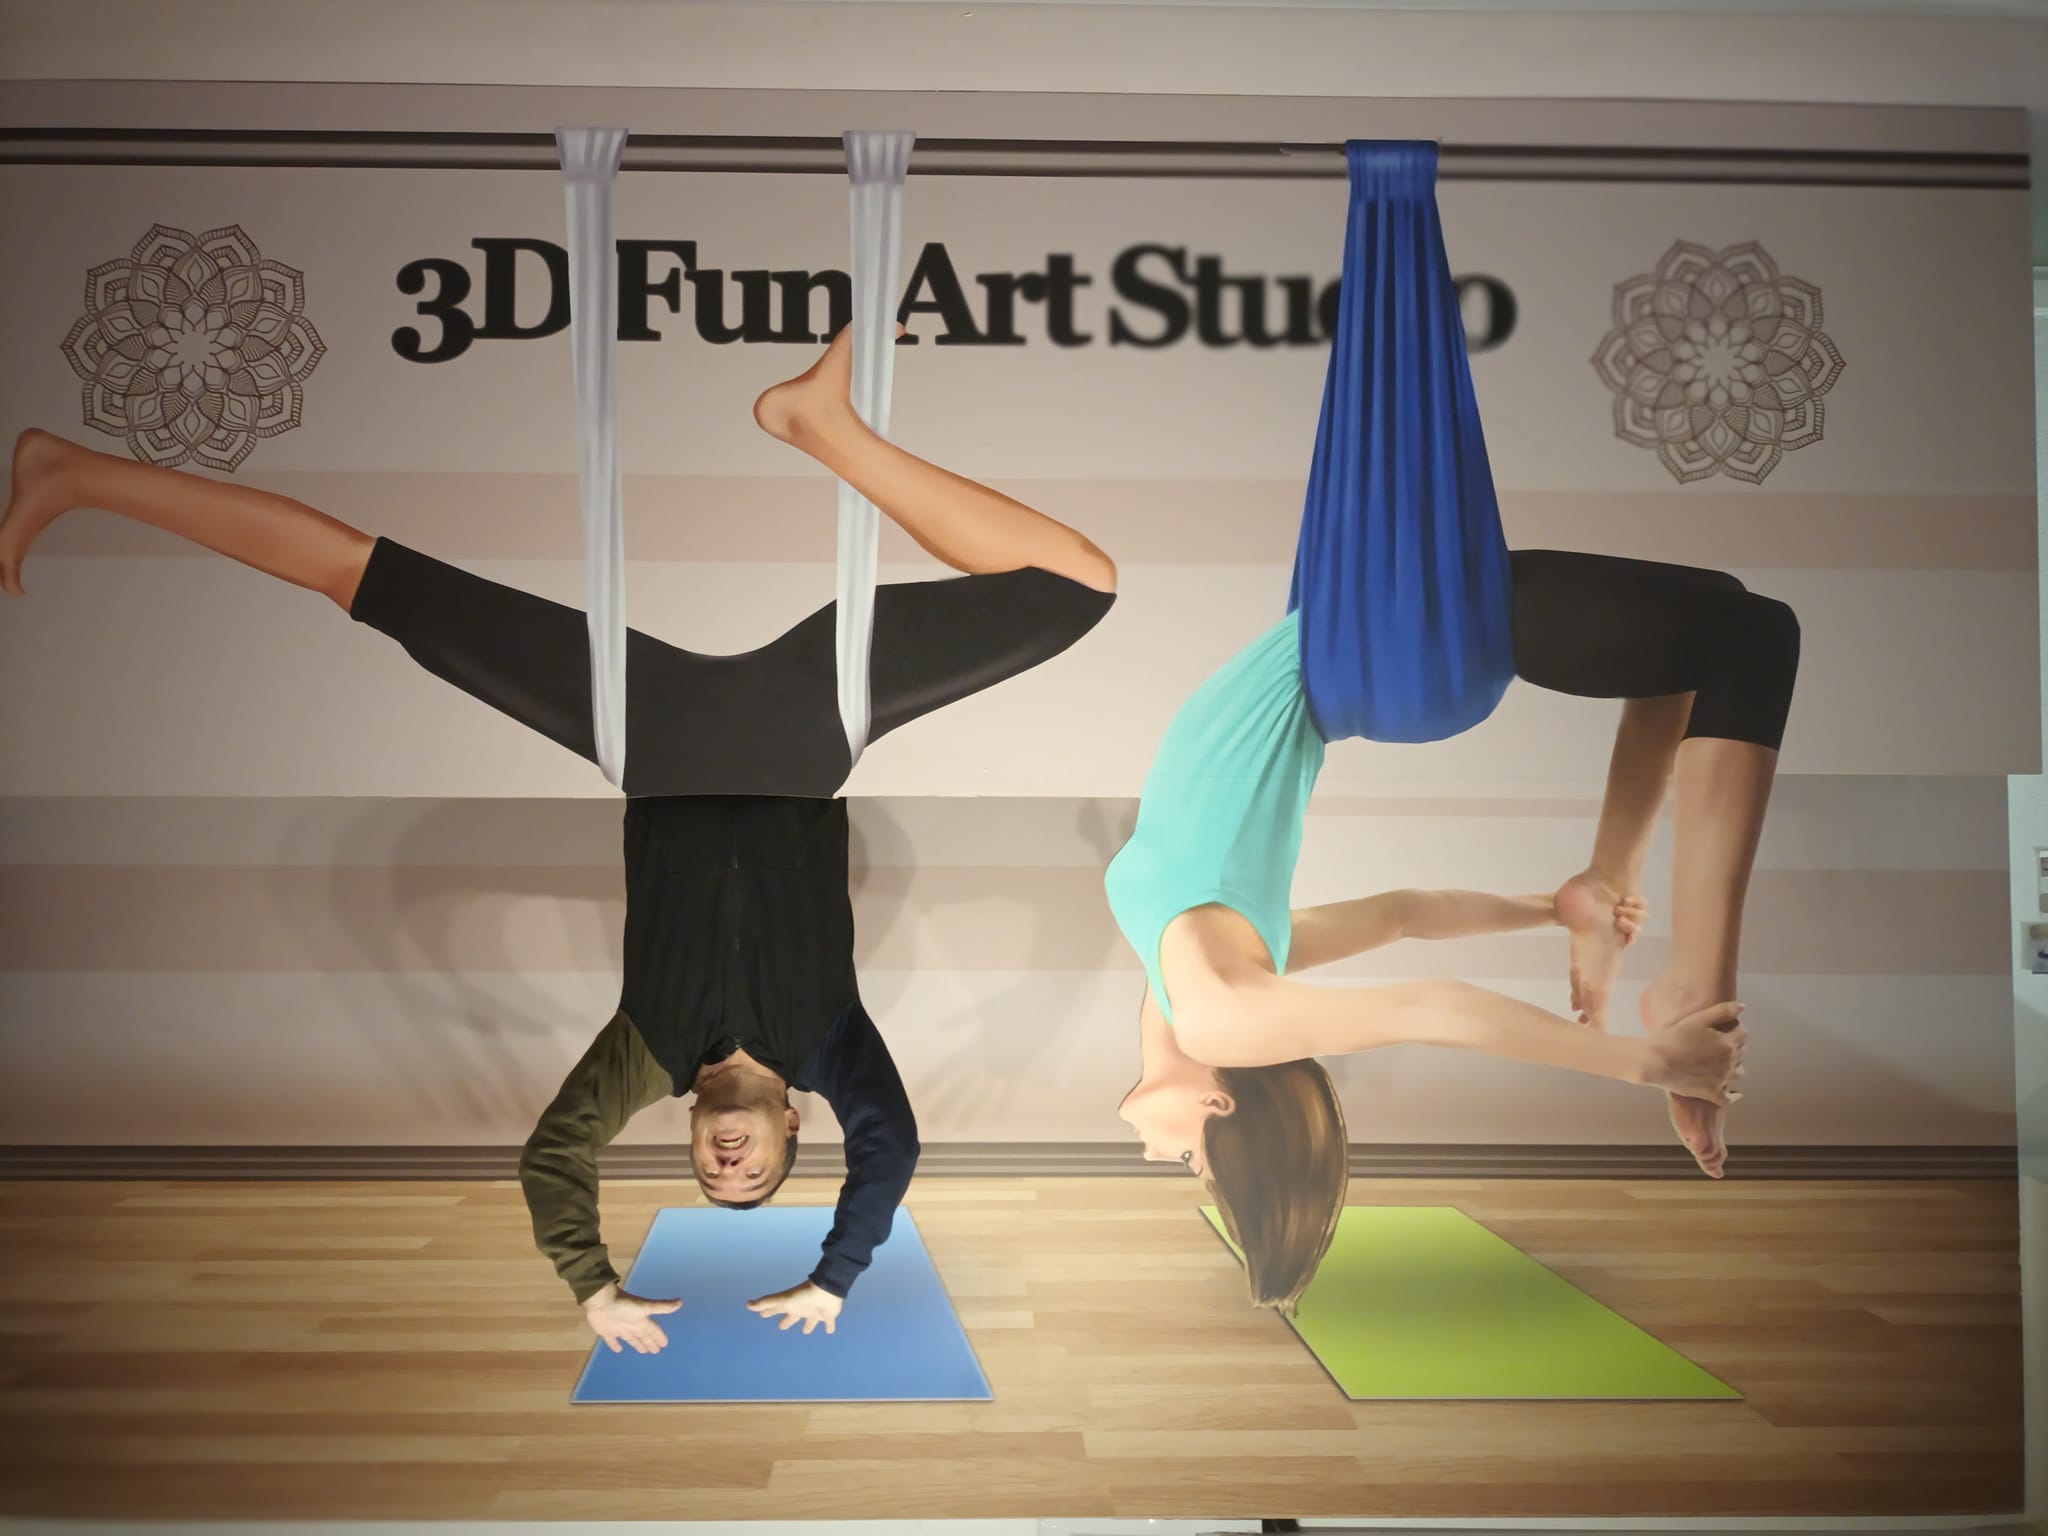 VISITA AO 3D FUN ART MUSEUM LISBOA -Flexibilidade nata